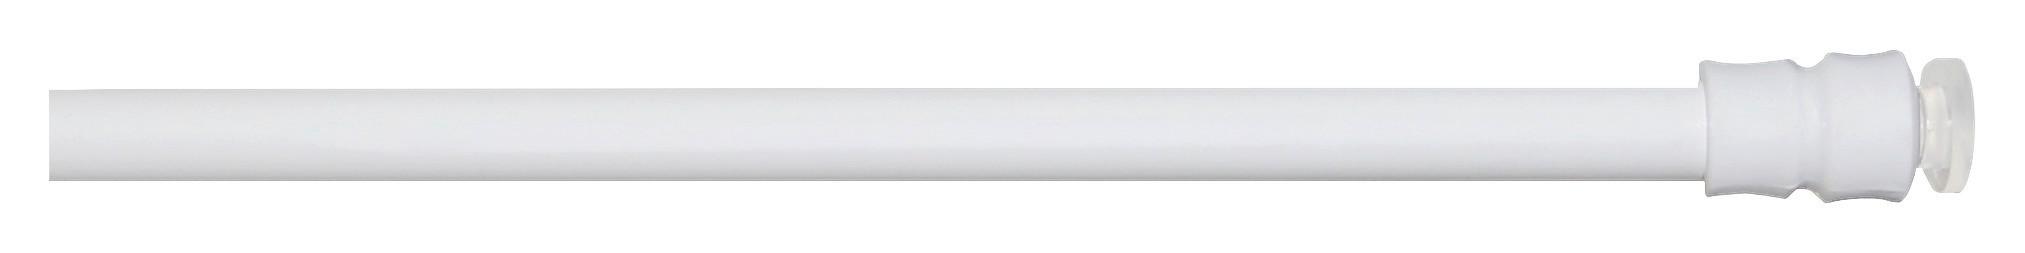 Vorhangstange Weiß L: 60-90 cm Mit Saugknopf - Weiß, KONVENTIONELL, Metall (60cm) - Ondega